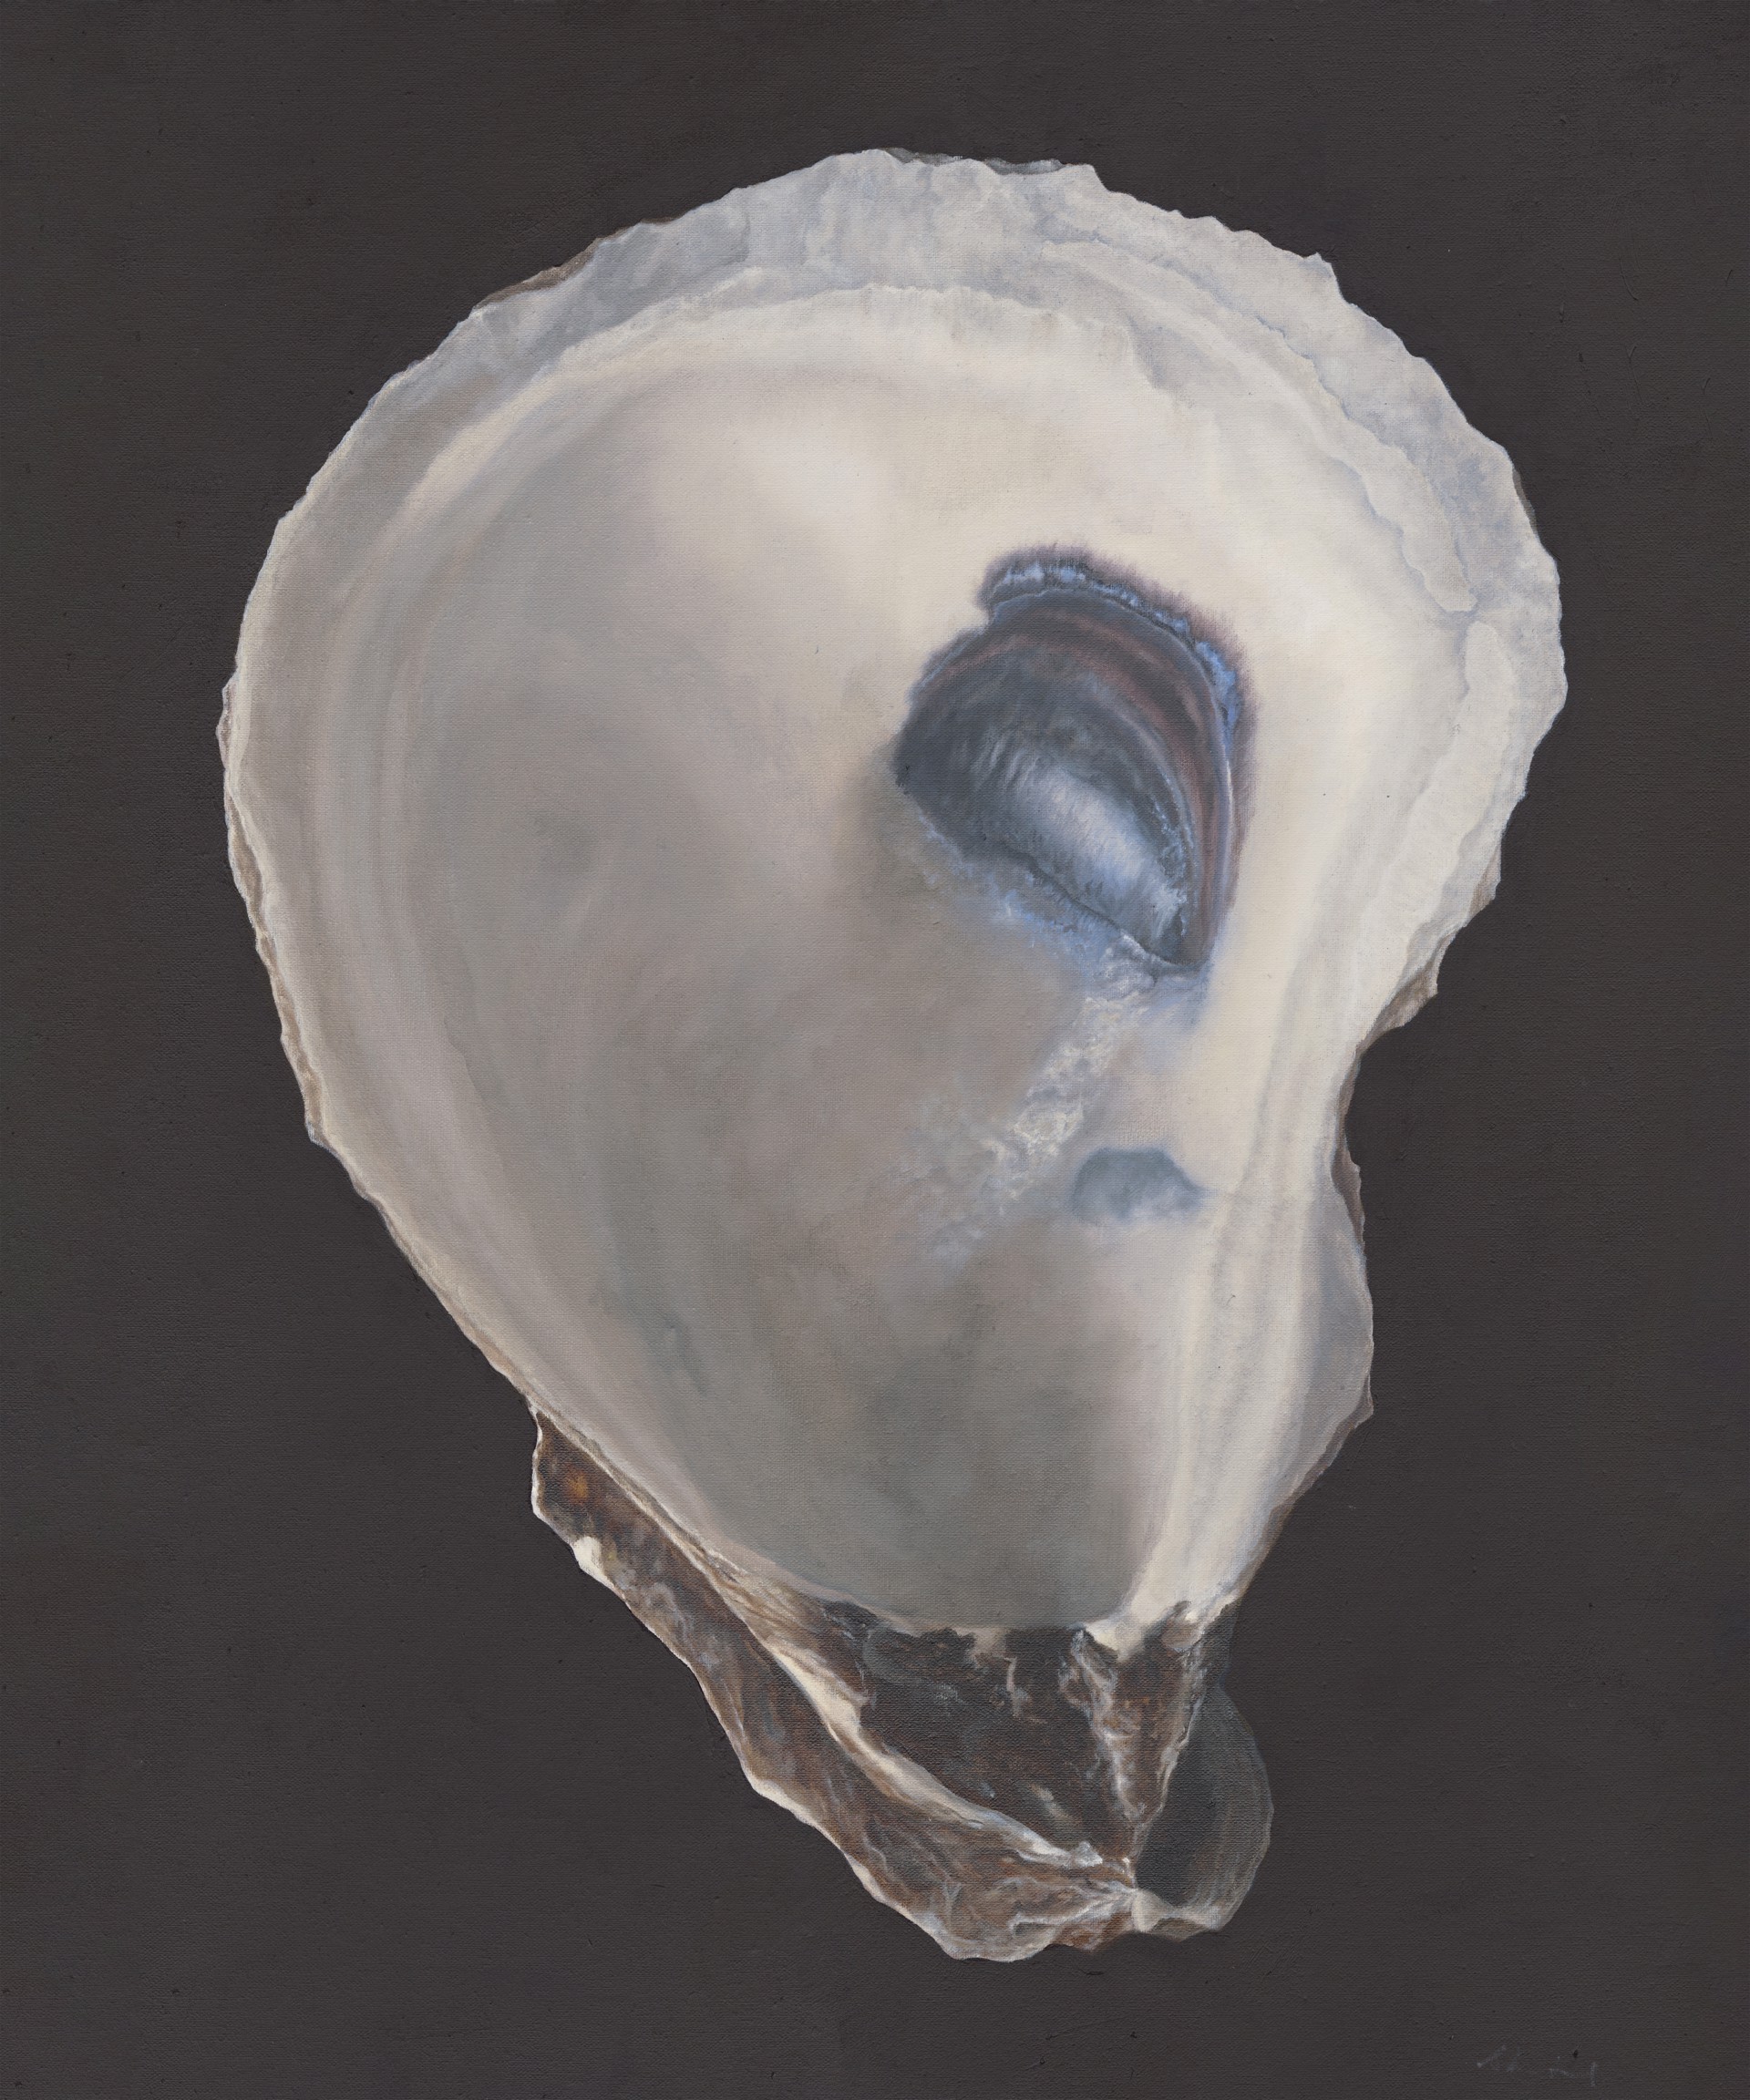 Oyster Shell No. 2 by Sarah Verardo